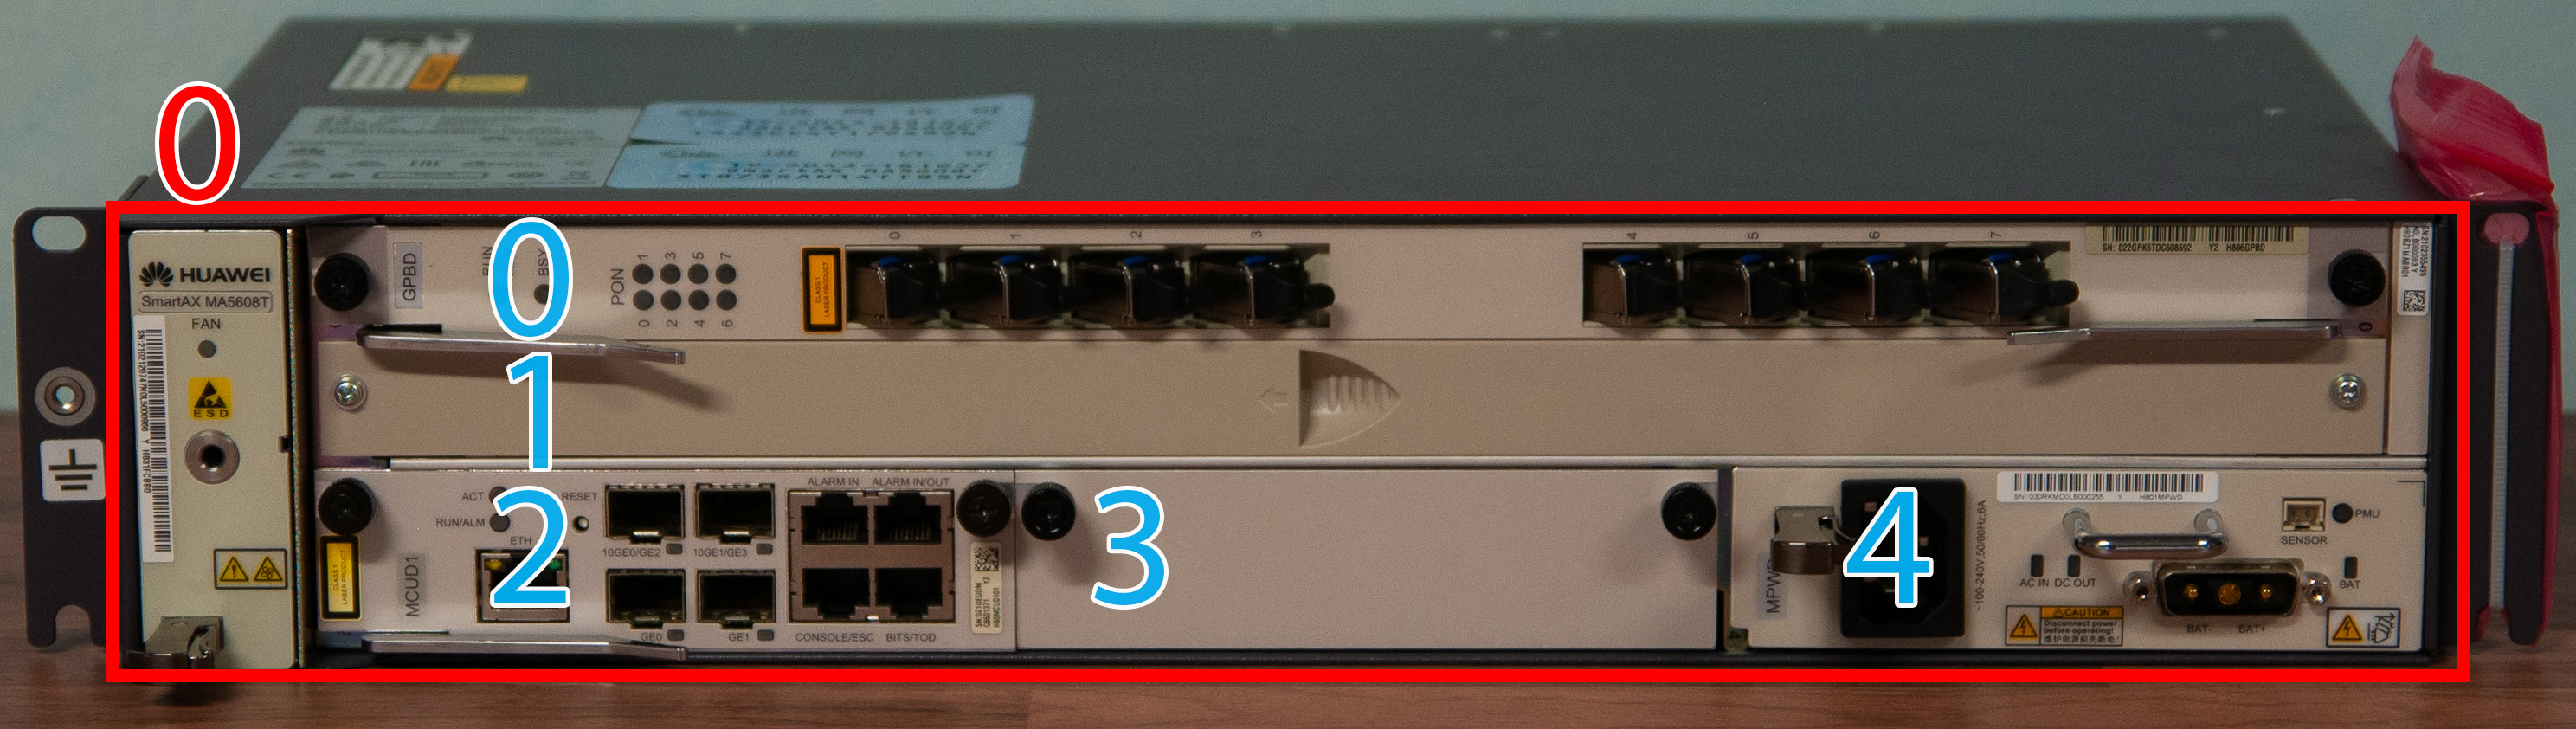 Numerazione dei componenti installati nell'OLT MA5608T